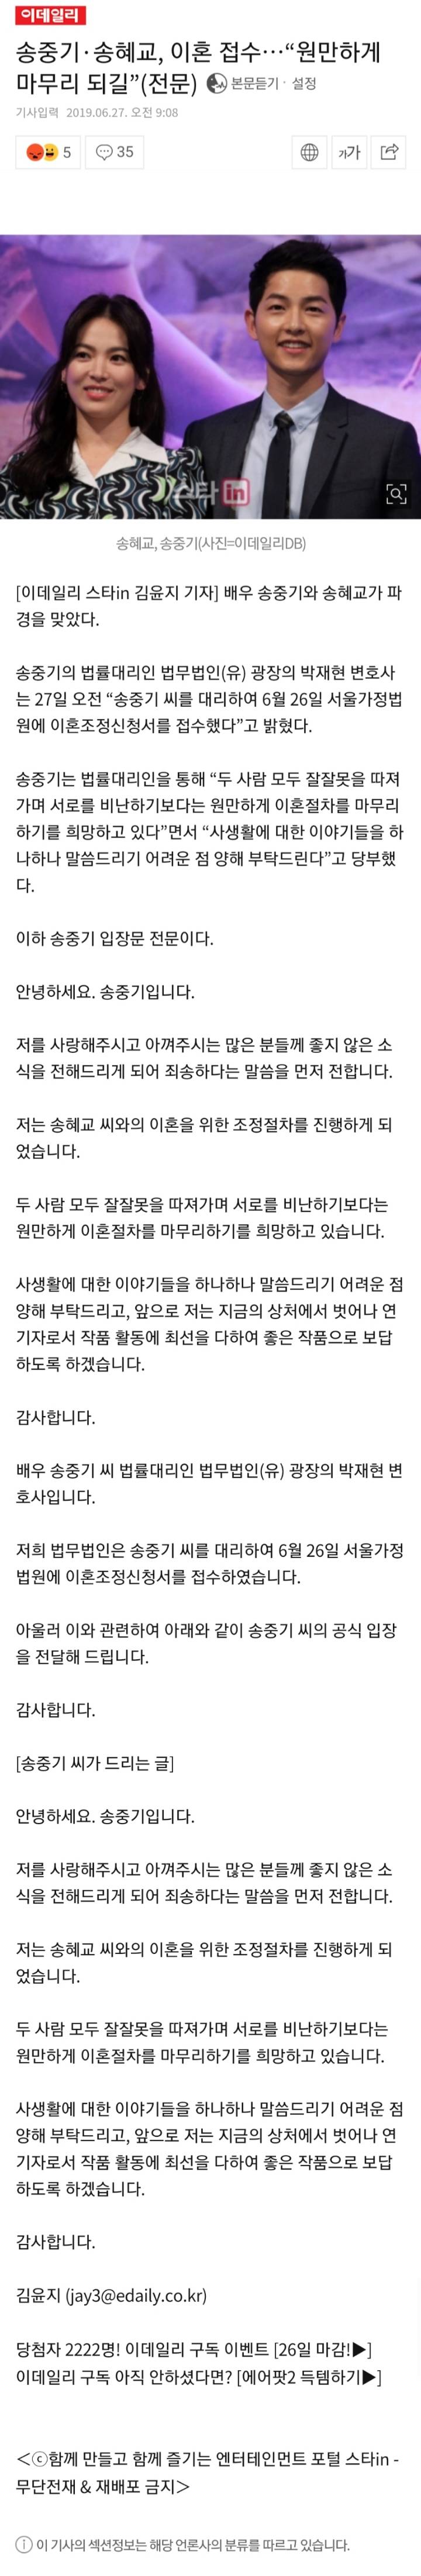 송중기,송혜교 이혼접수... | 인스티즈